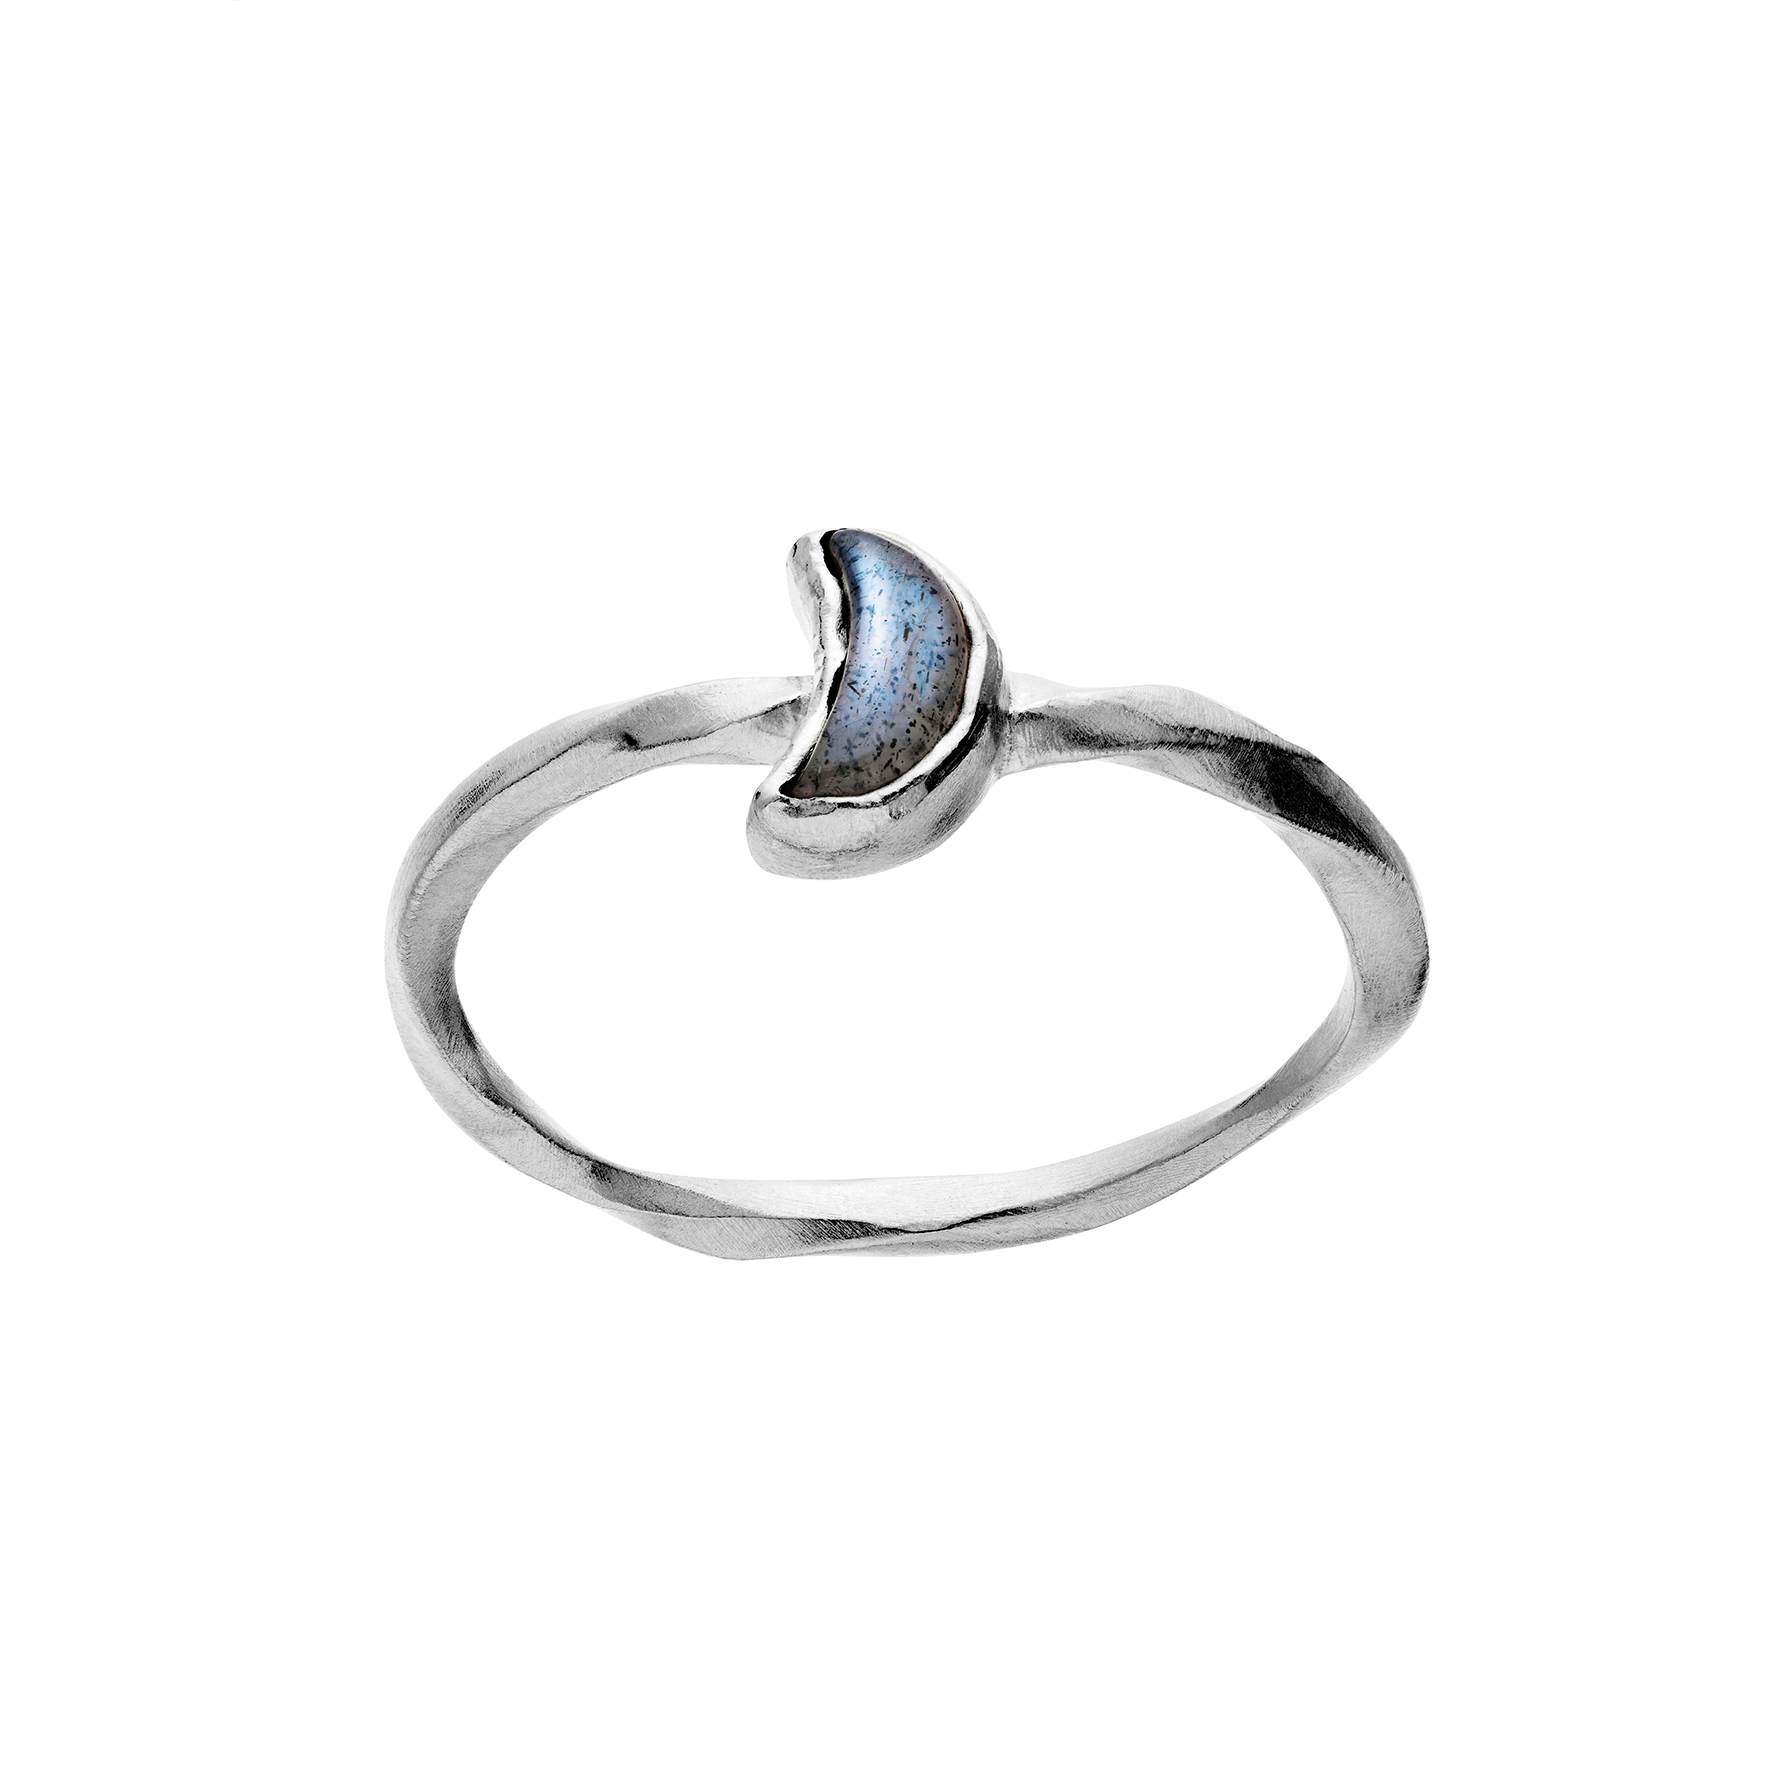 Doris Ring from Maanesten in Silver Sterling 925